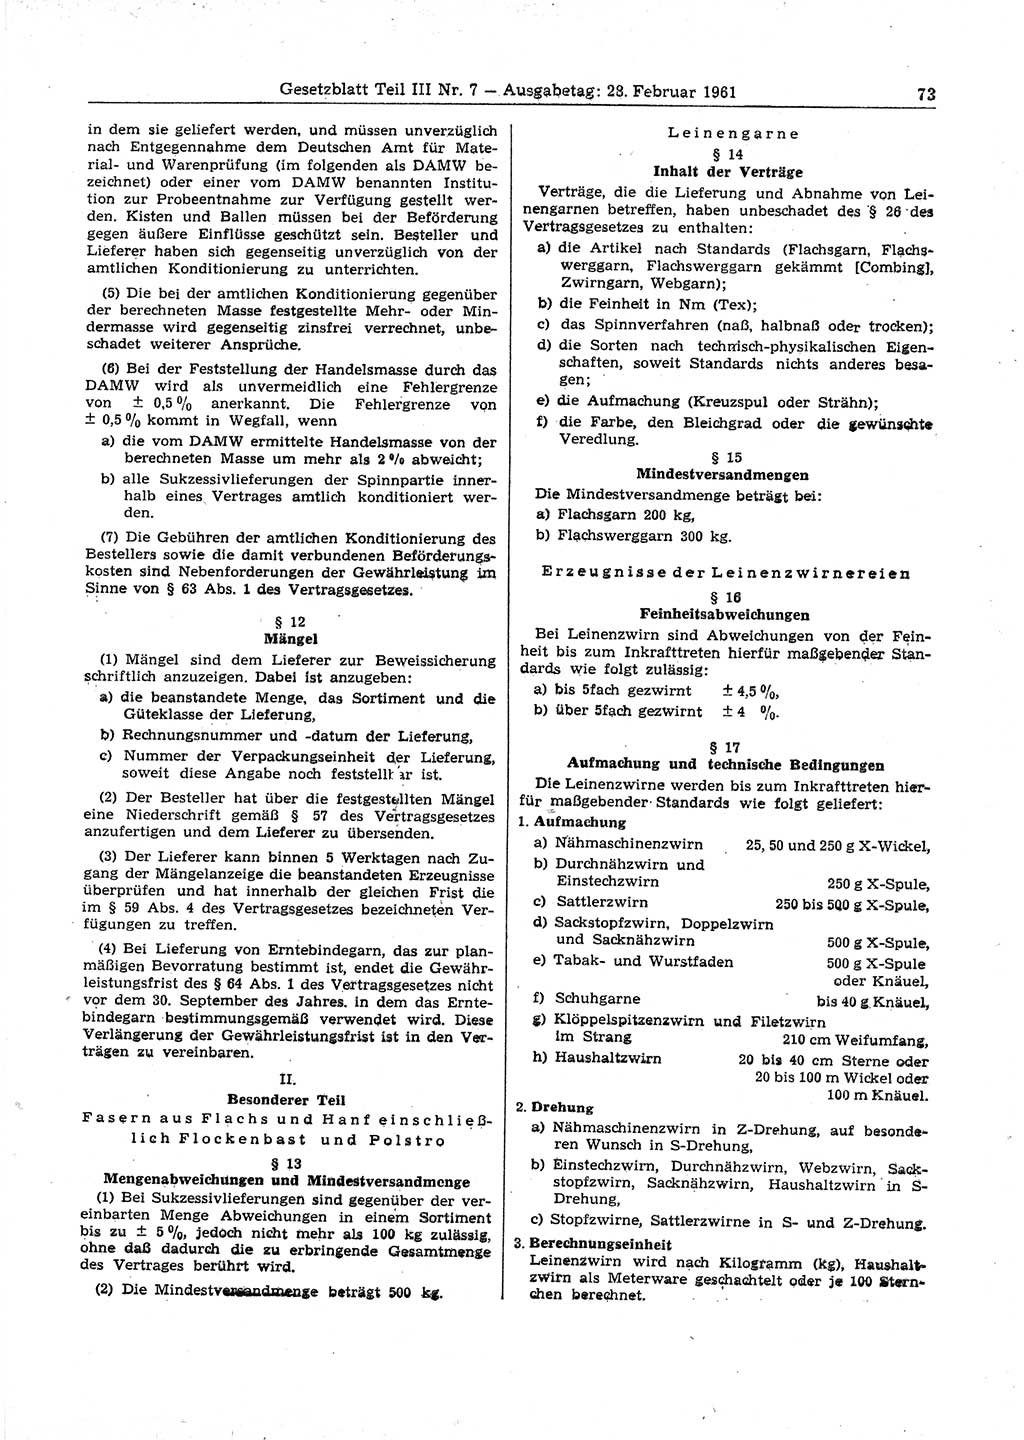 Gesetzblatt (GBl.) der Deutschen Demokratischen Republik (DDR) Teil ⅠⅠⅠ 1961, Seite 73 (GBl. DDR ⅠⅠⅠ 1961, S. 73)